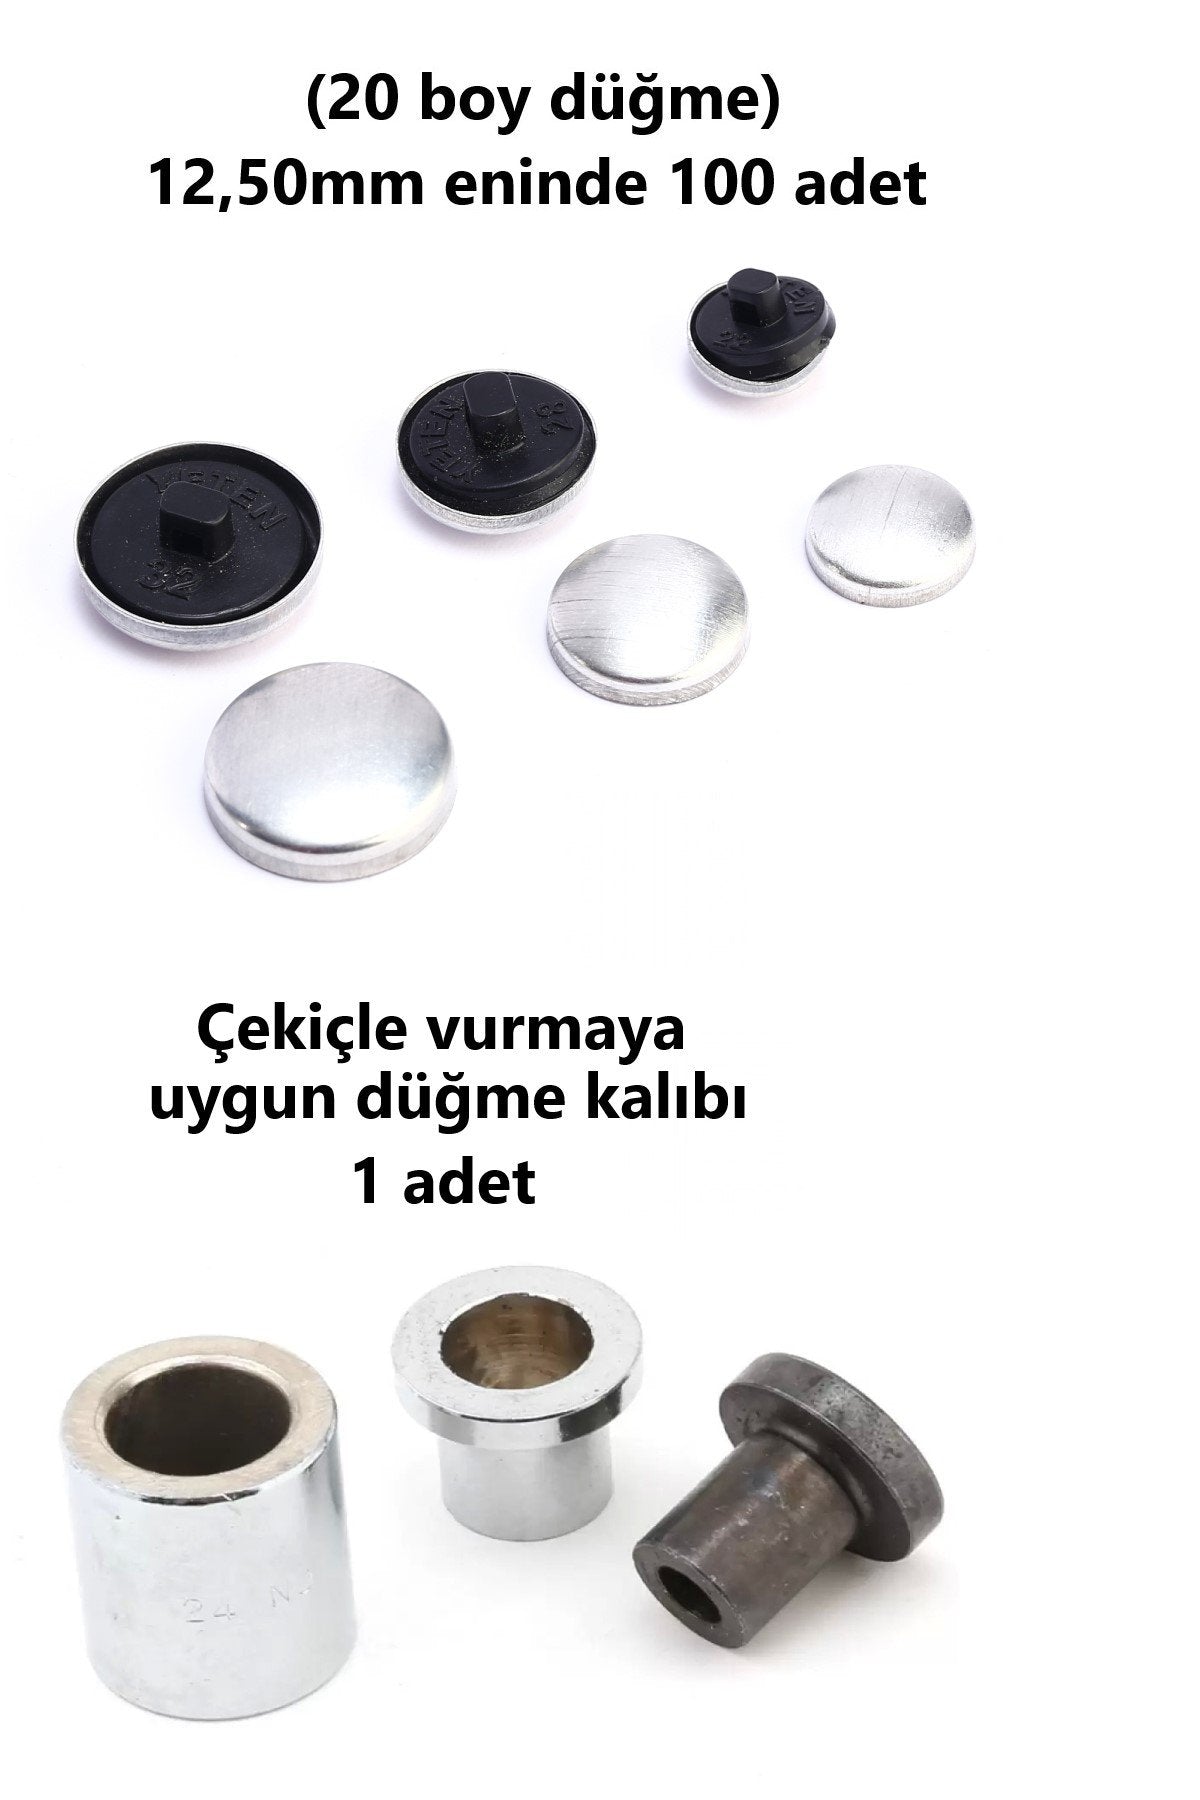 Kumaş Kaplama Düğme Yapım Seti - (20 Boy) 100 adet Düğme ve Kalıp  (12,50mm)